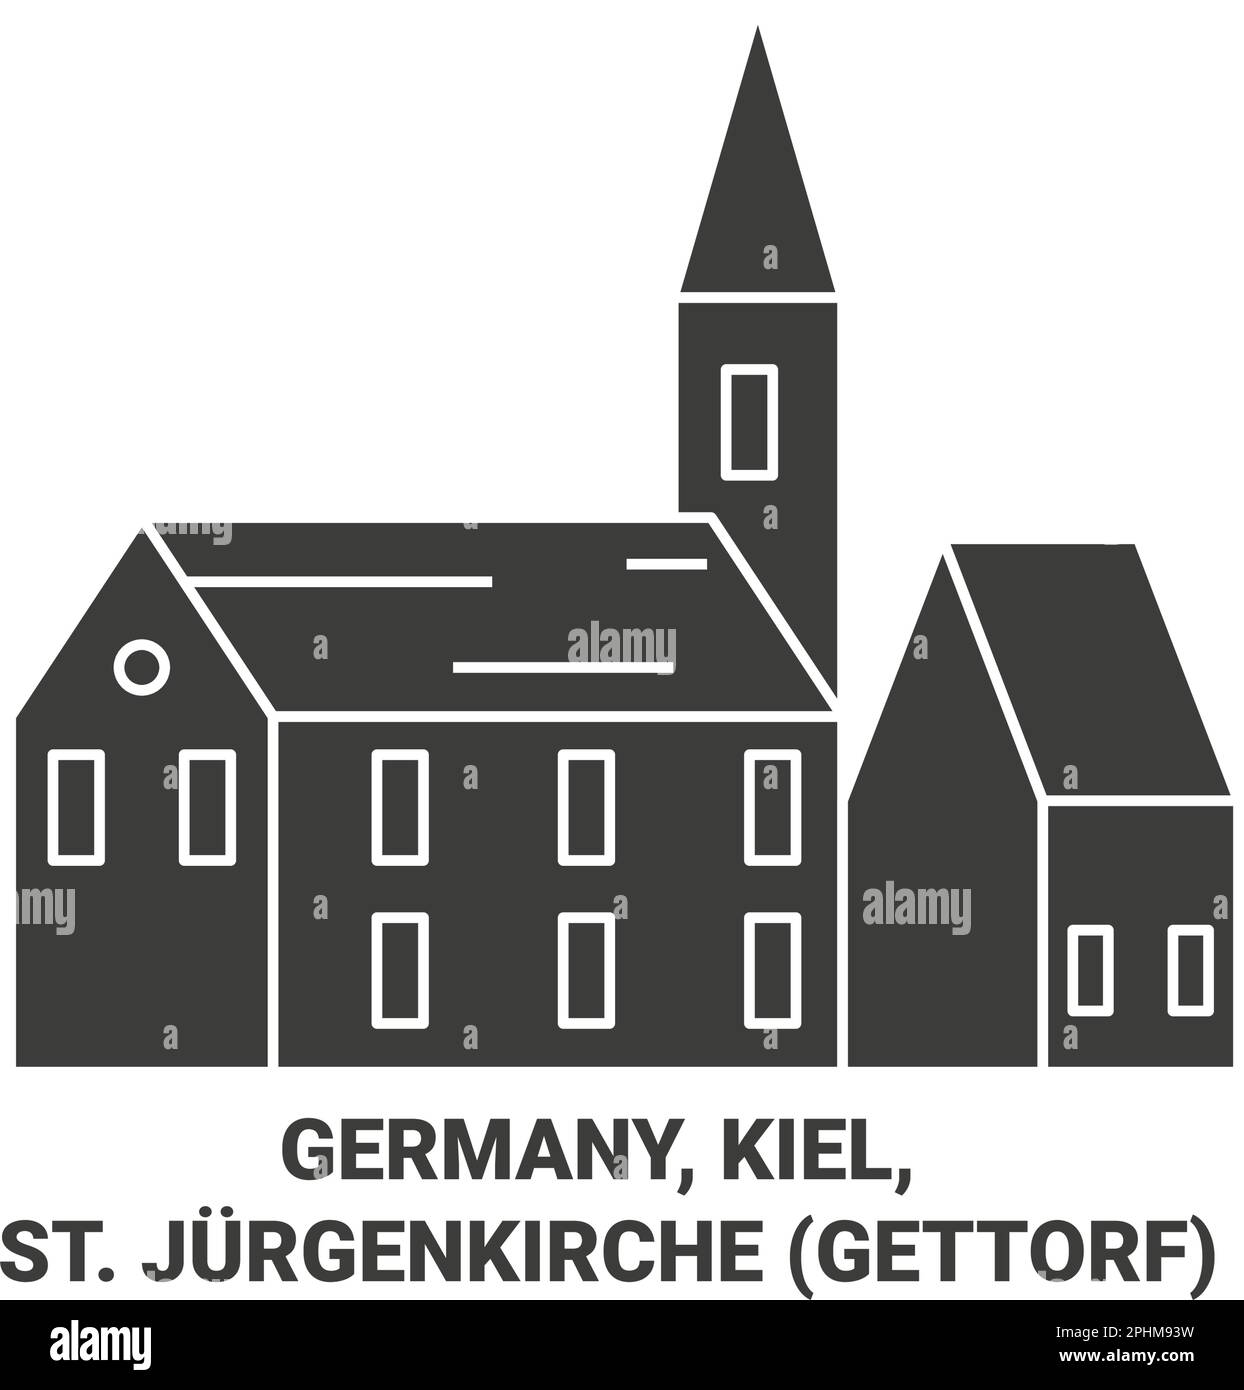 Allemagne, Kiel, St. Illustration du vecteur de repère de voyage Jurgenkirche Gettorf Illustration de Vecteur